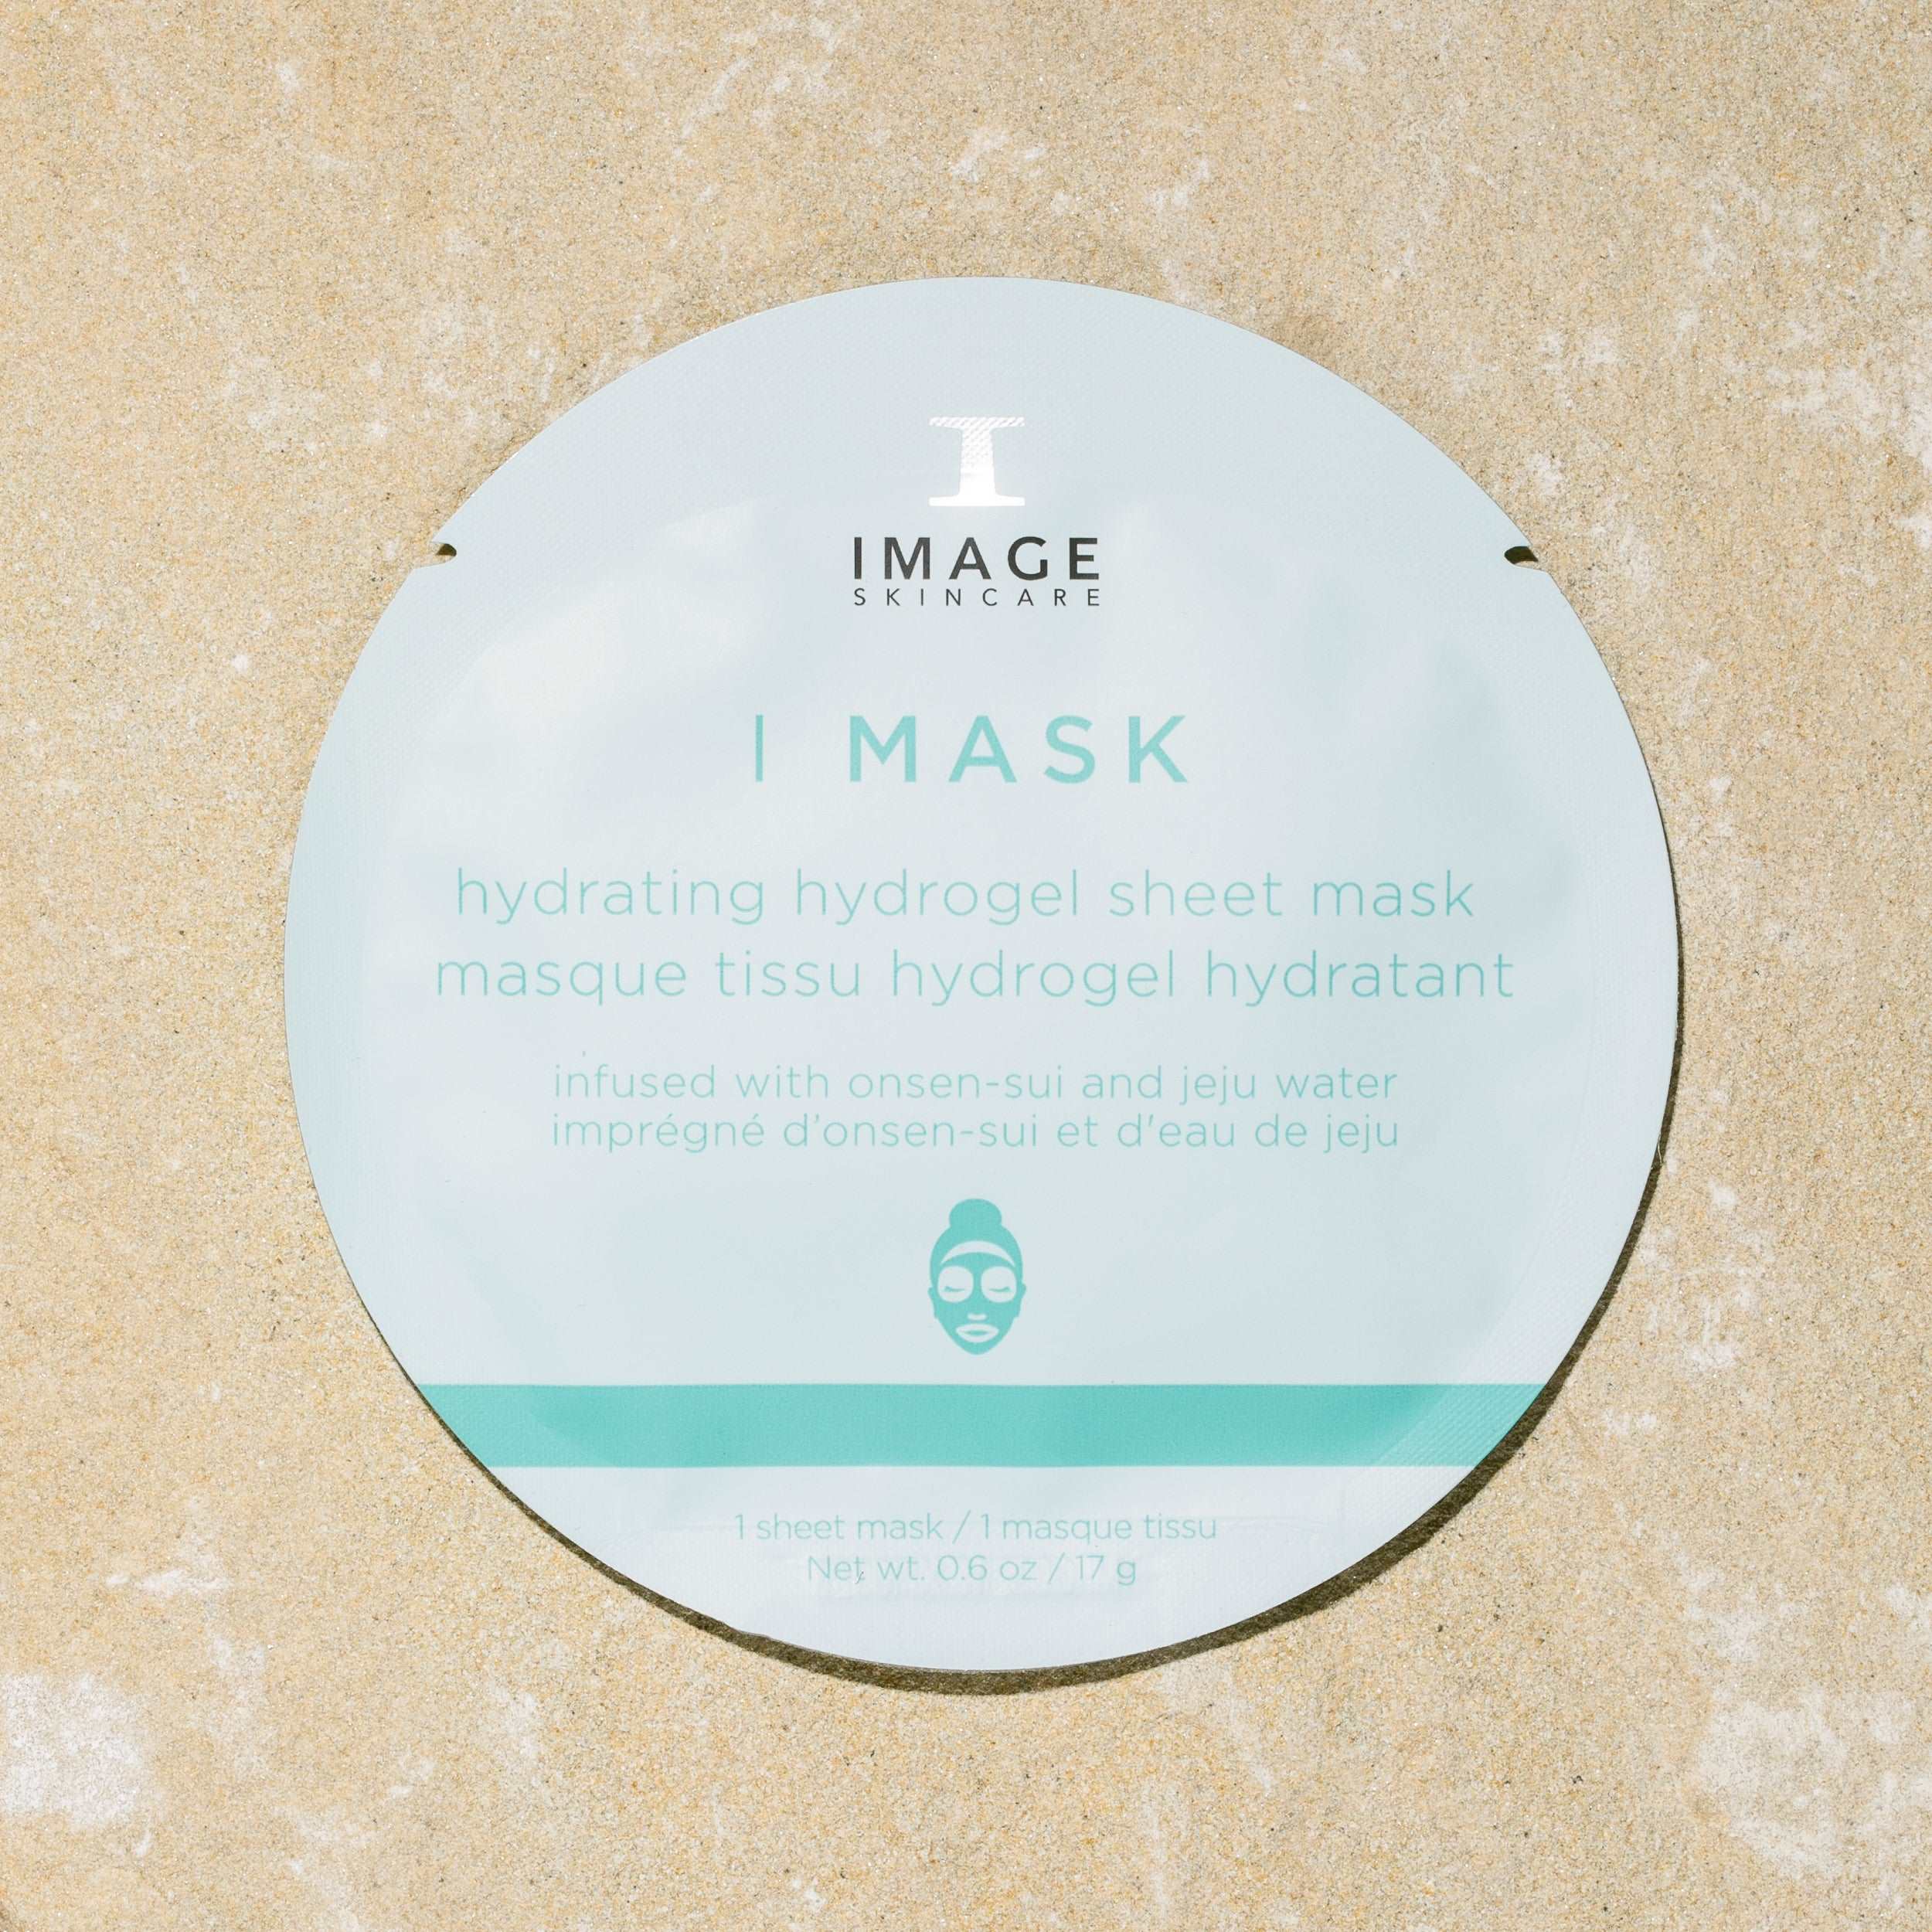 I MASK Hydrating Hydrogel Sheet Mask (Single) Image Skincare